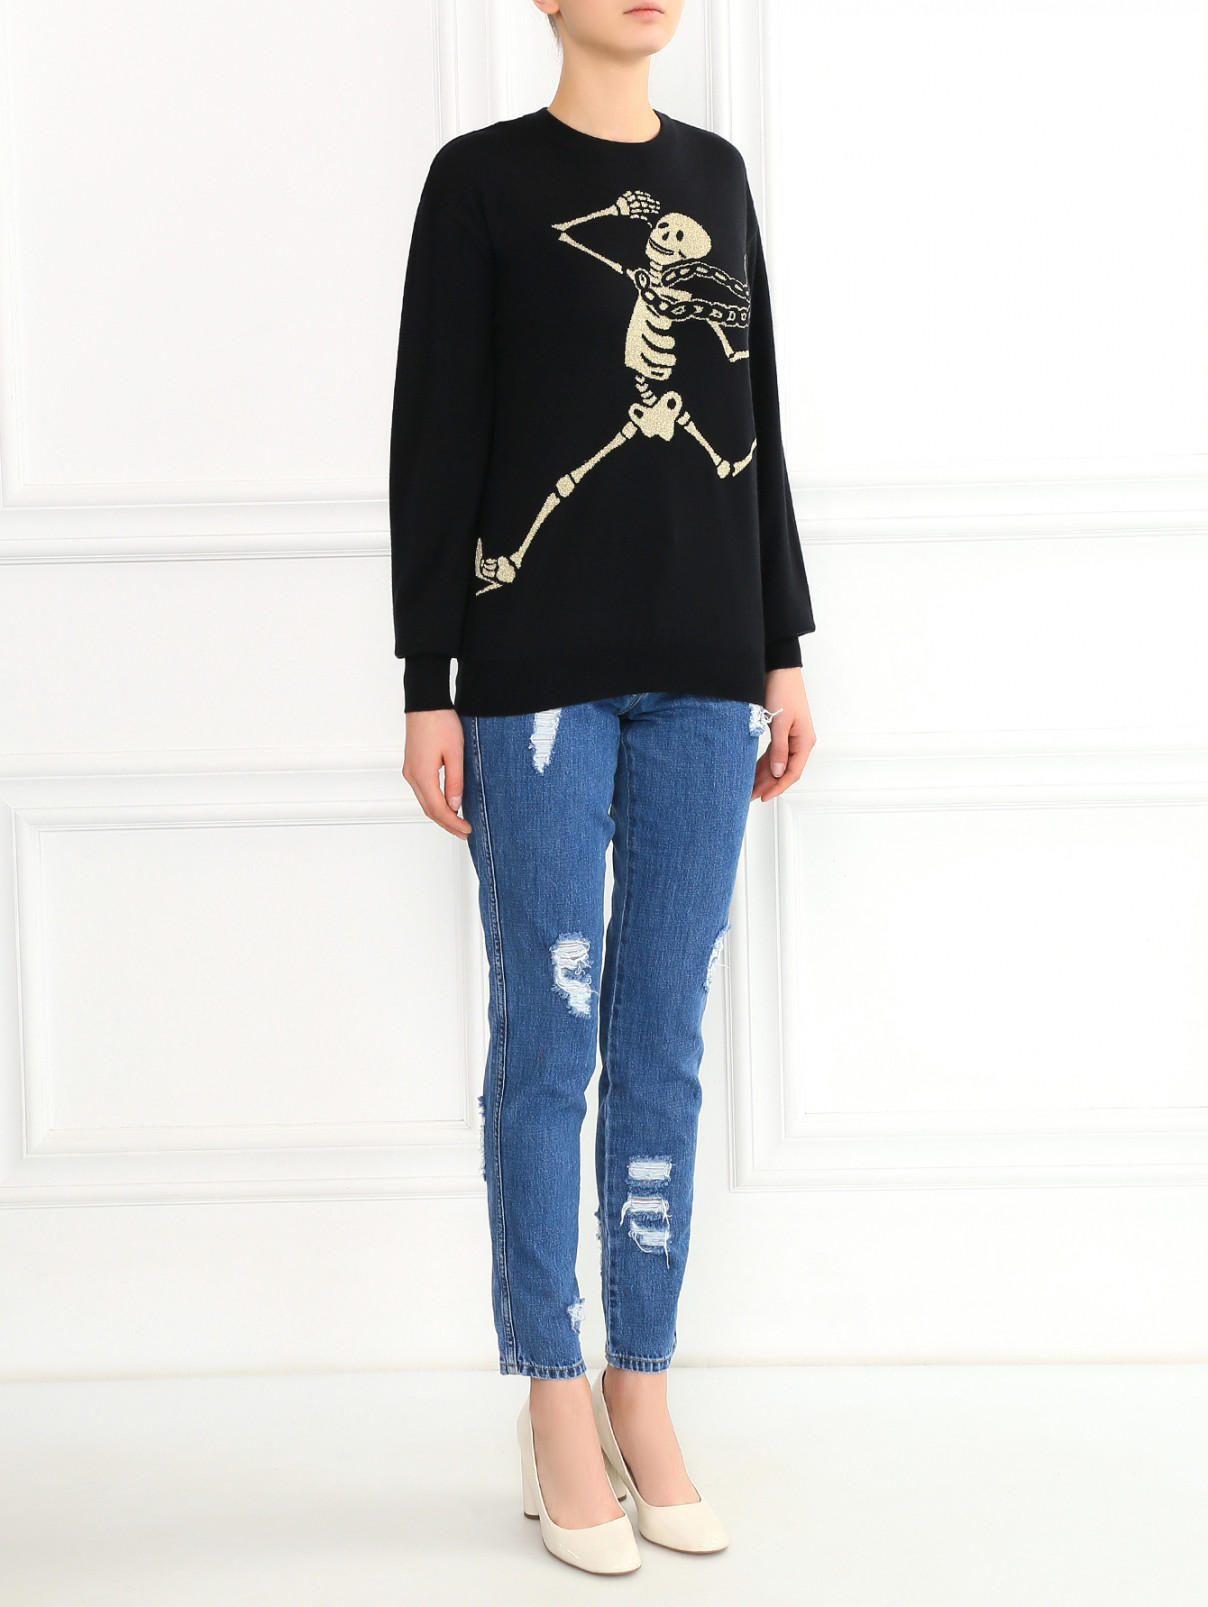 Джемпер из шерсти мелкой вязки с узором Moschino Couture  –  Модель Общий вид  – Цвет:  Черный